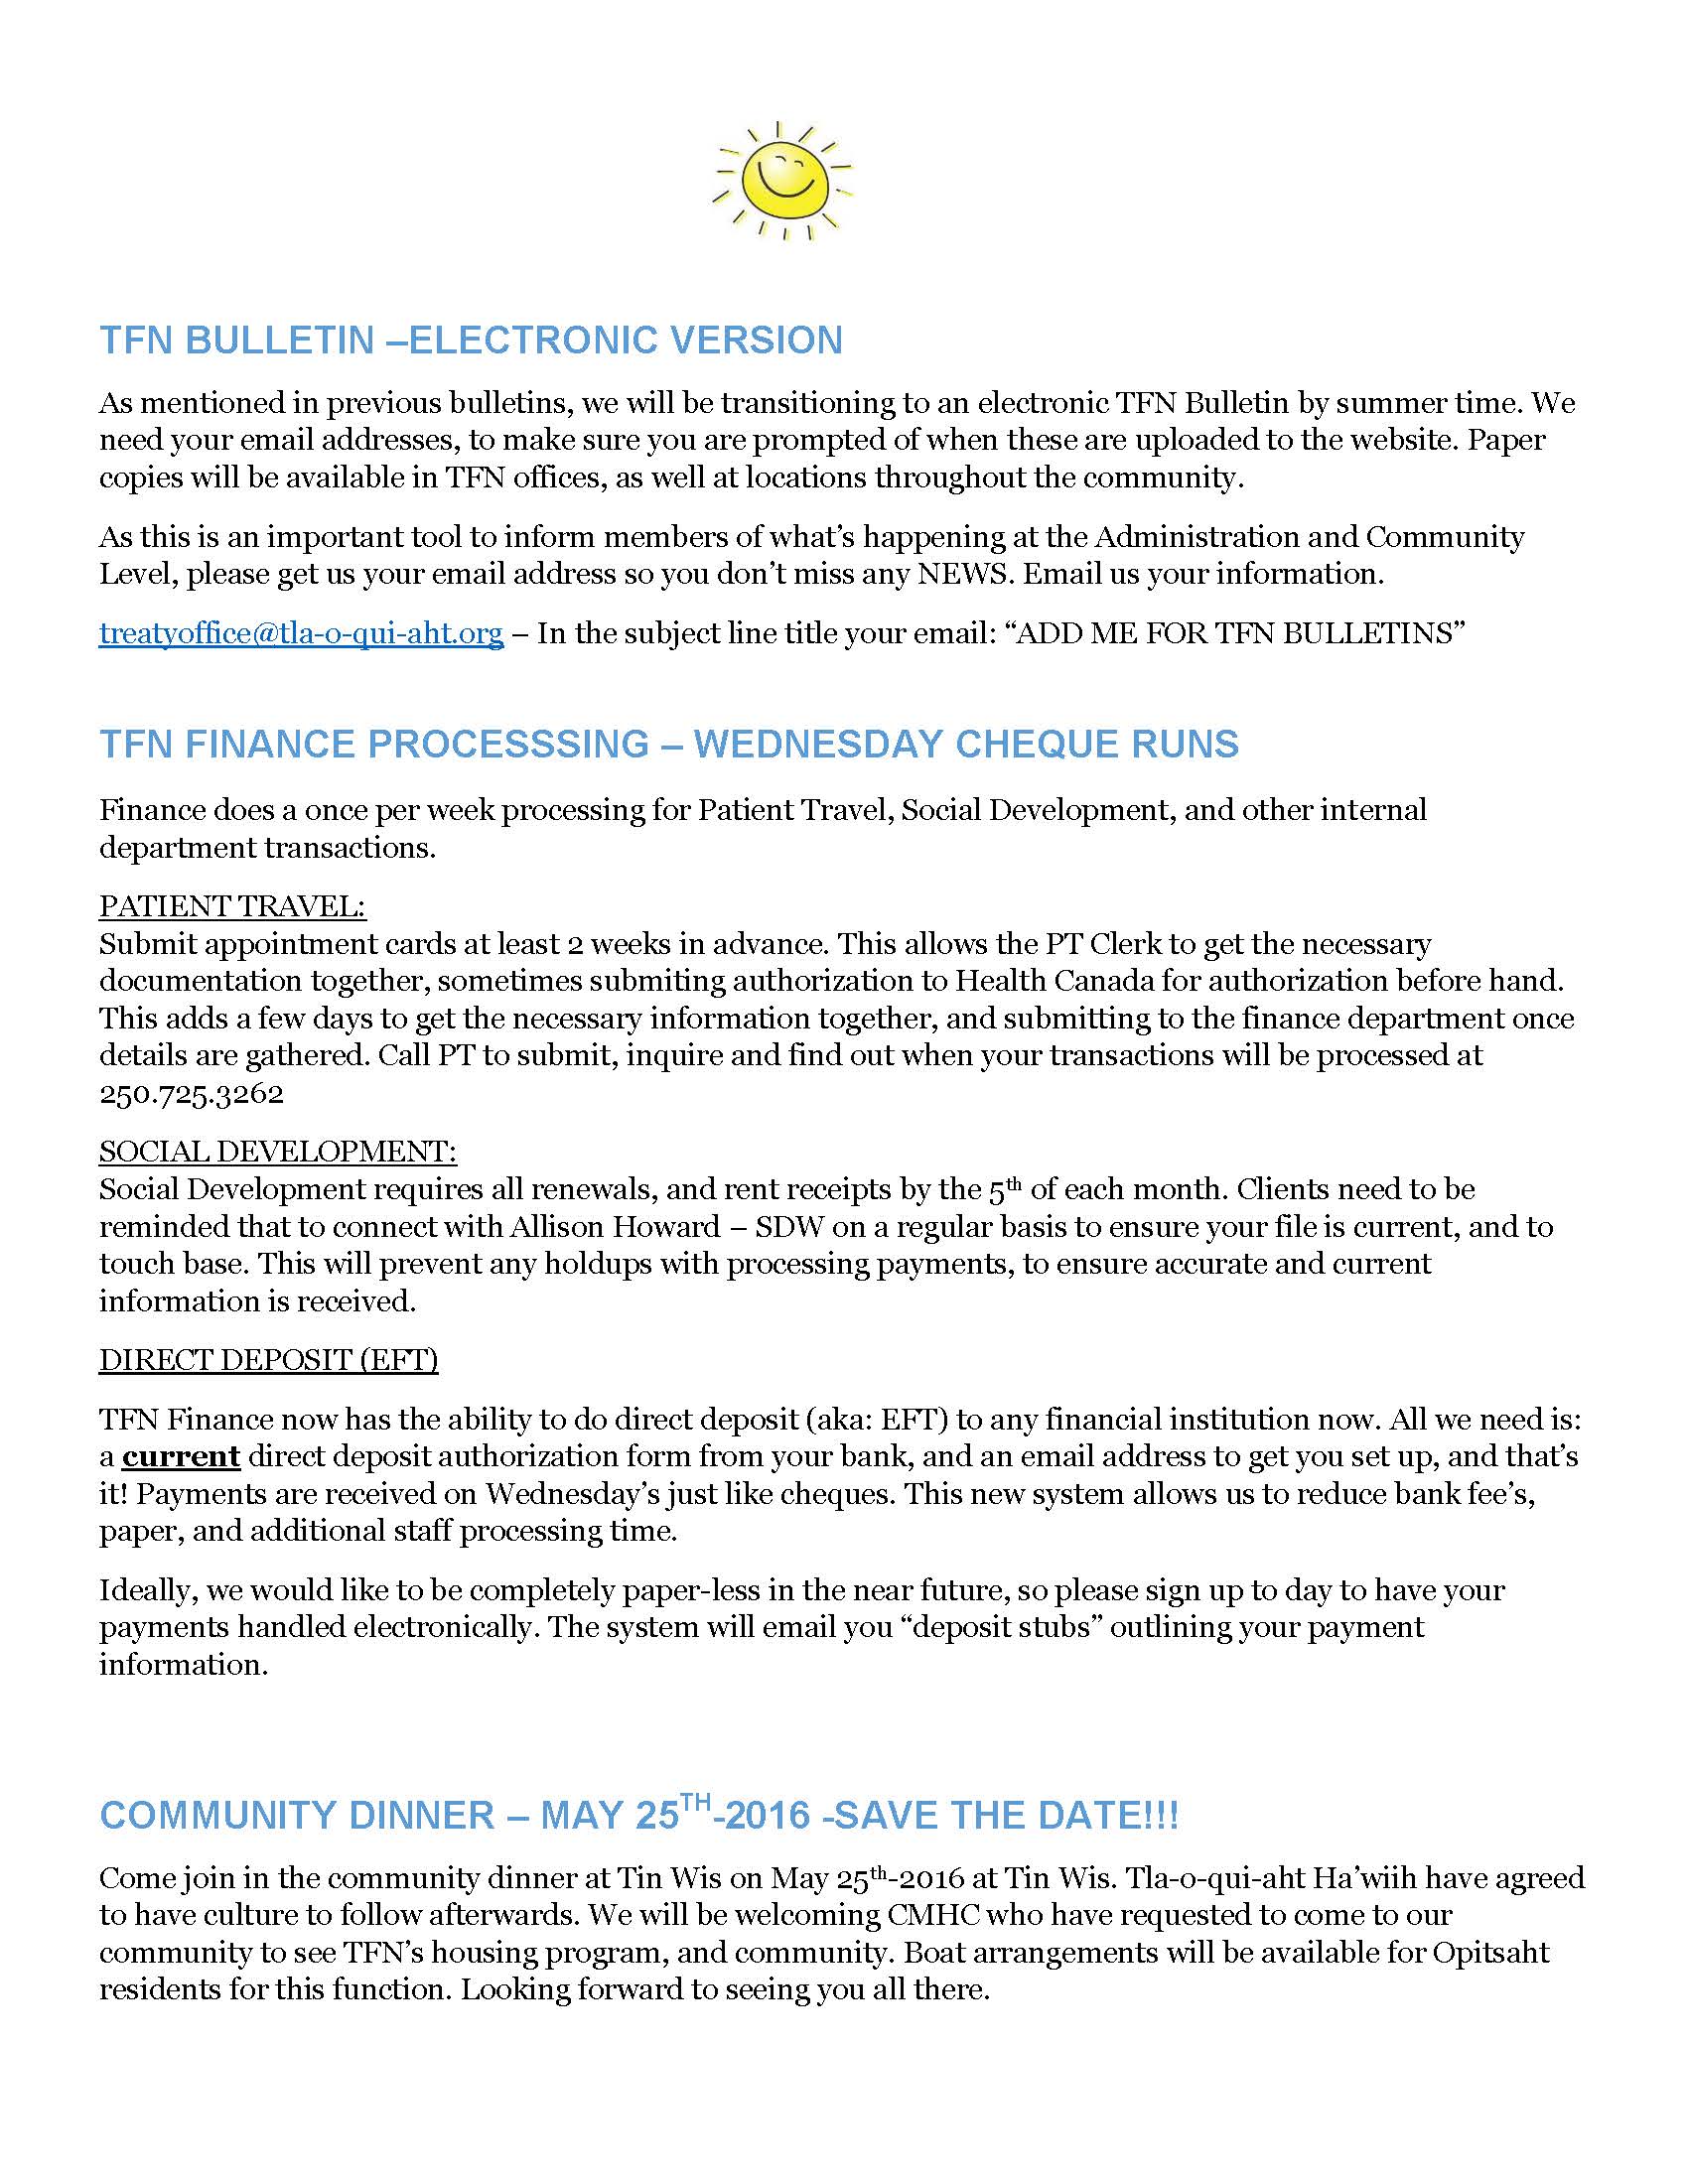 TFN Bulletin May 1-2016 (2)_Page_4.jpg